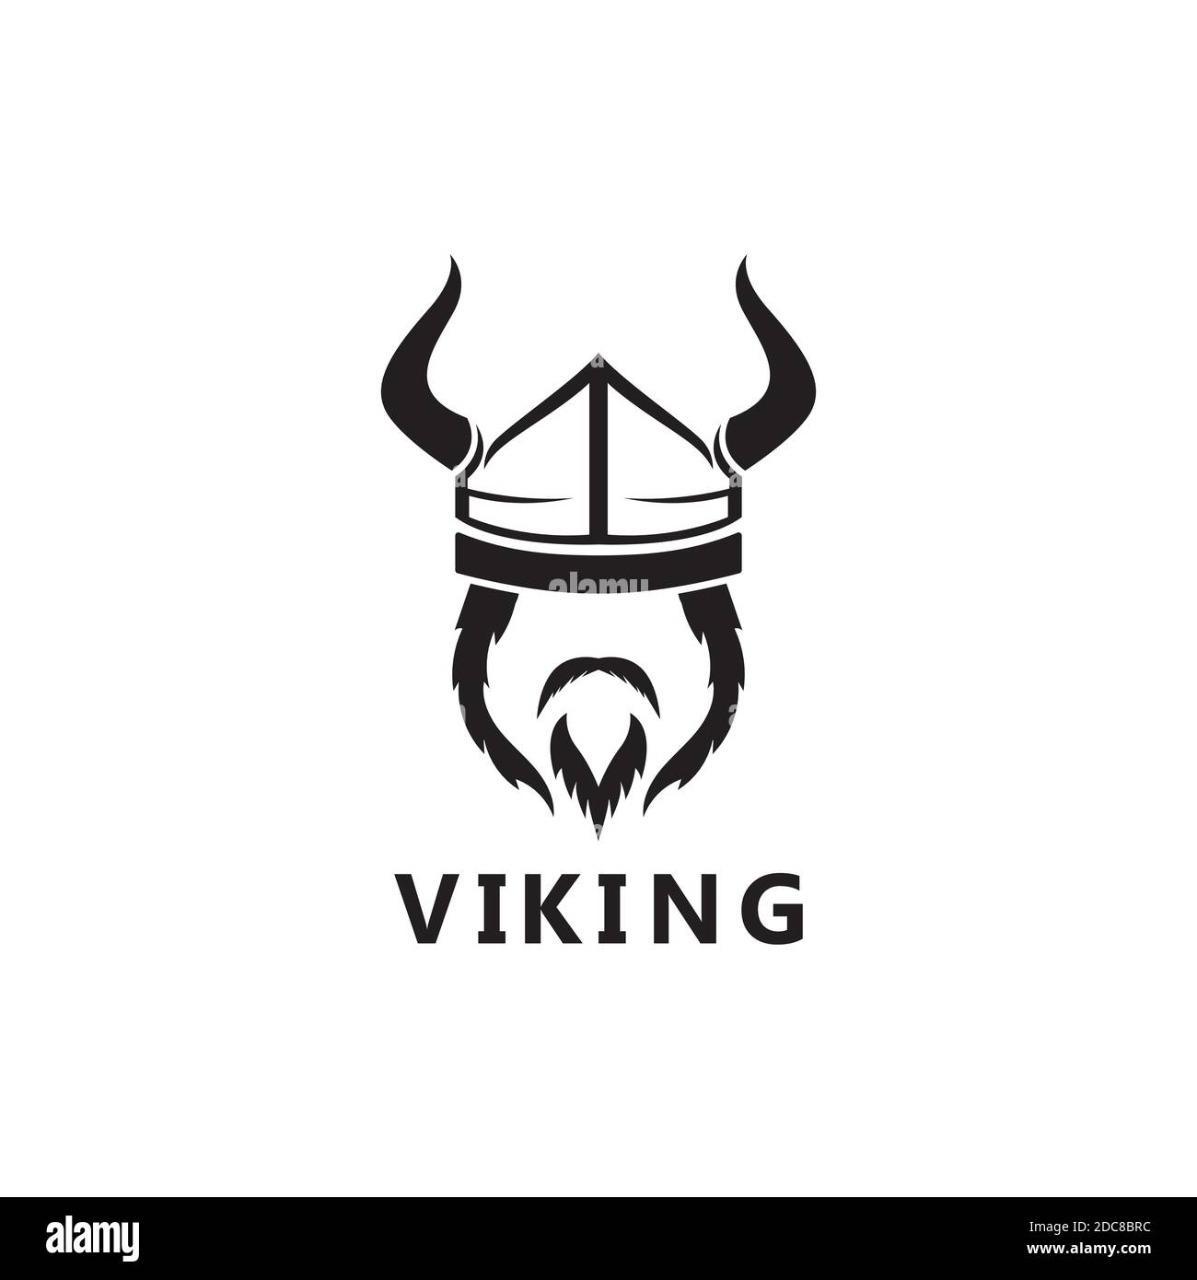 Vikingo95?s=8m3ko+yn45a1lvdz5+zqqjtybaeazz04afqmqz6u67u=